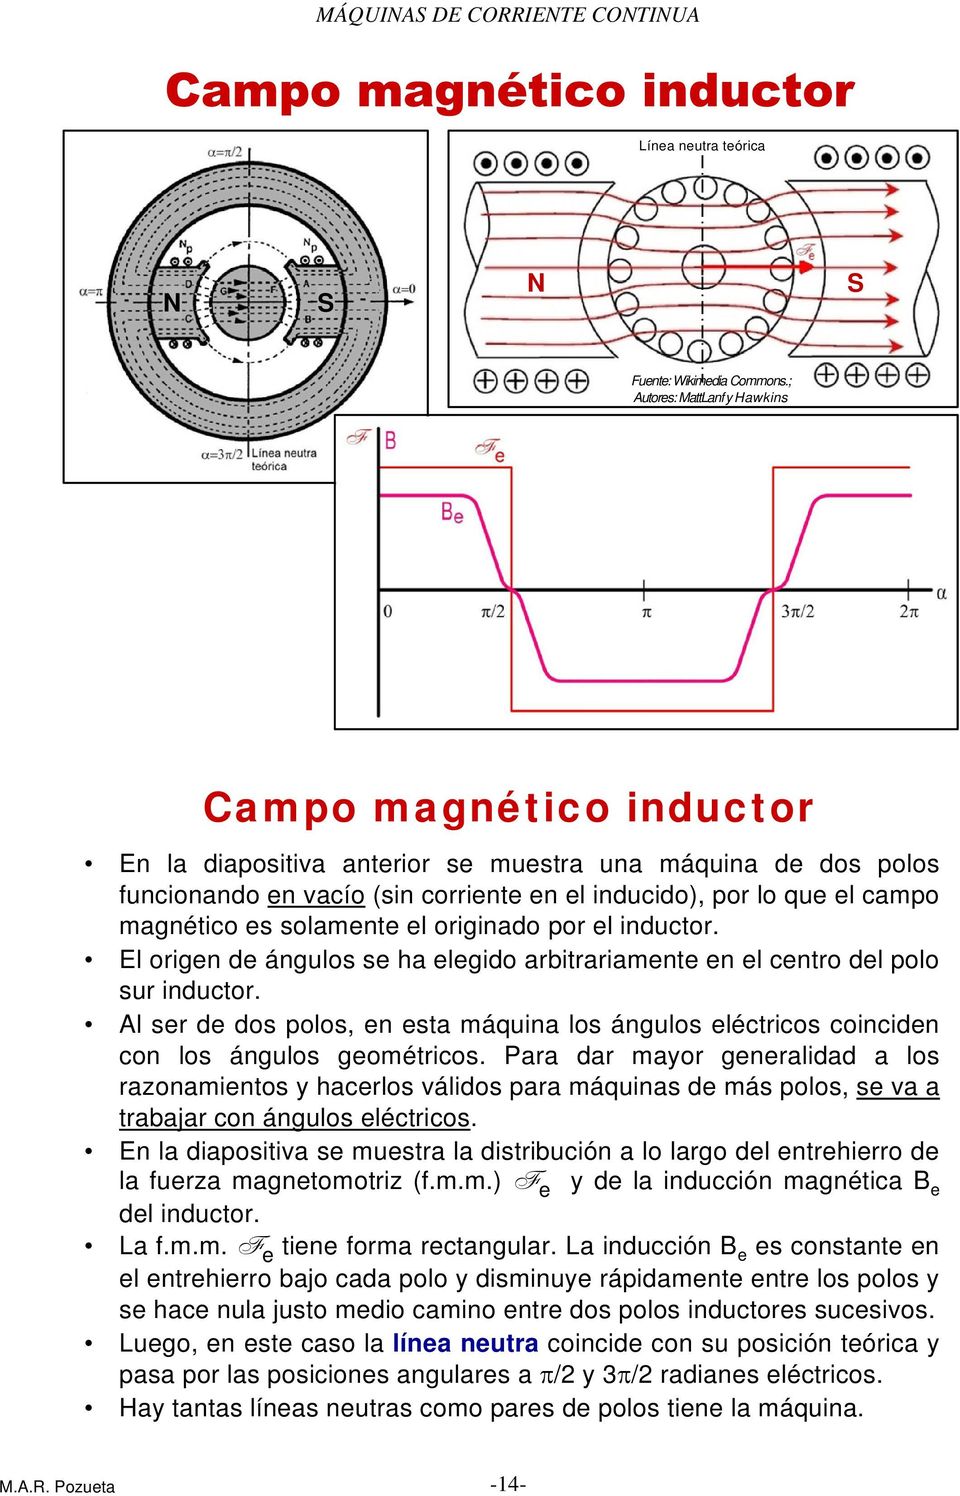 magnético es solamente el originado por el inductor. El origen de ángulos se ha elegido arbitrariamente en el centro del polo sur inductor.